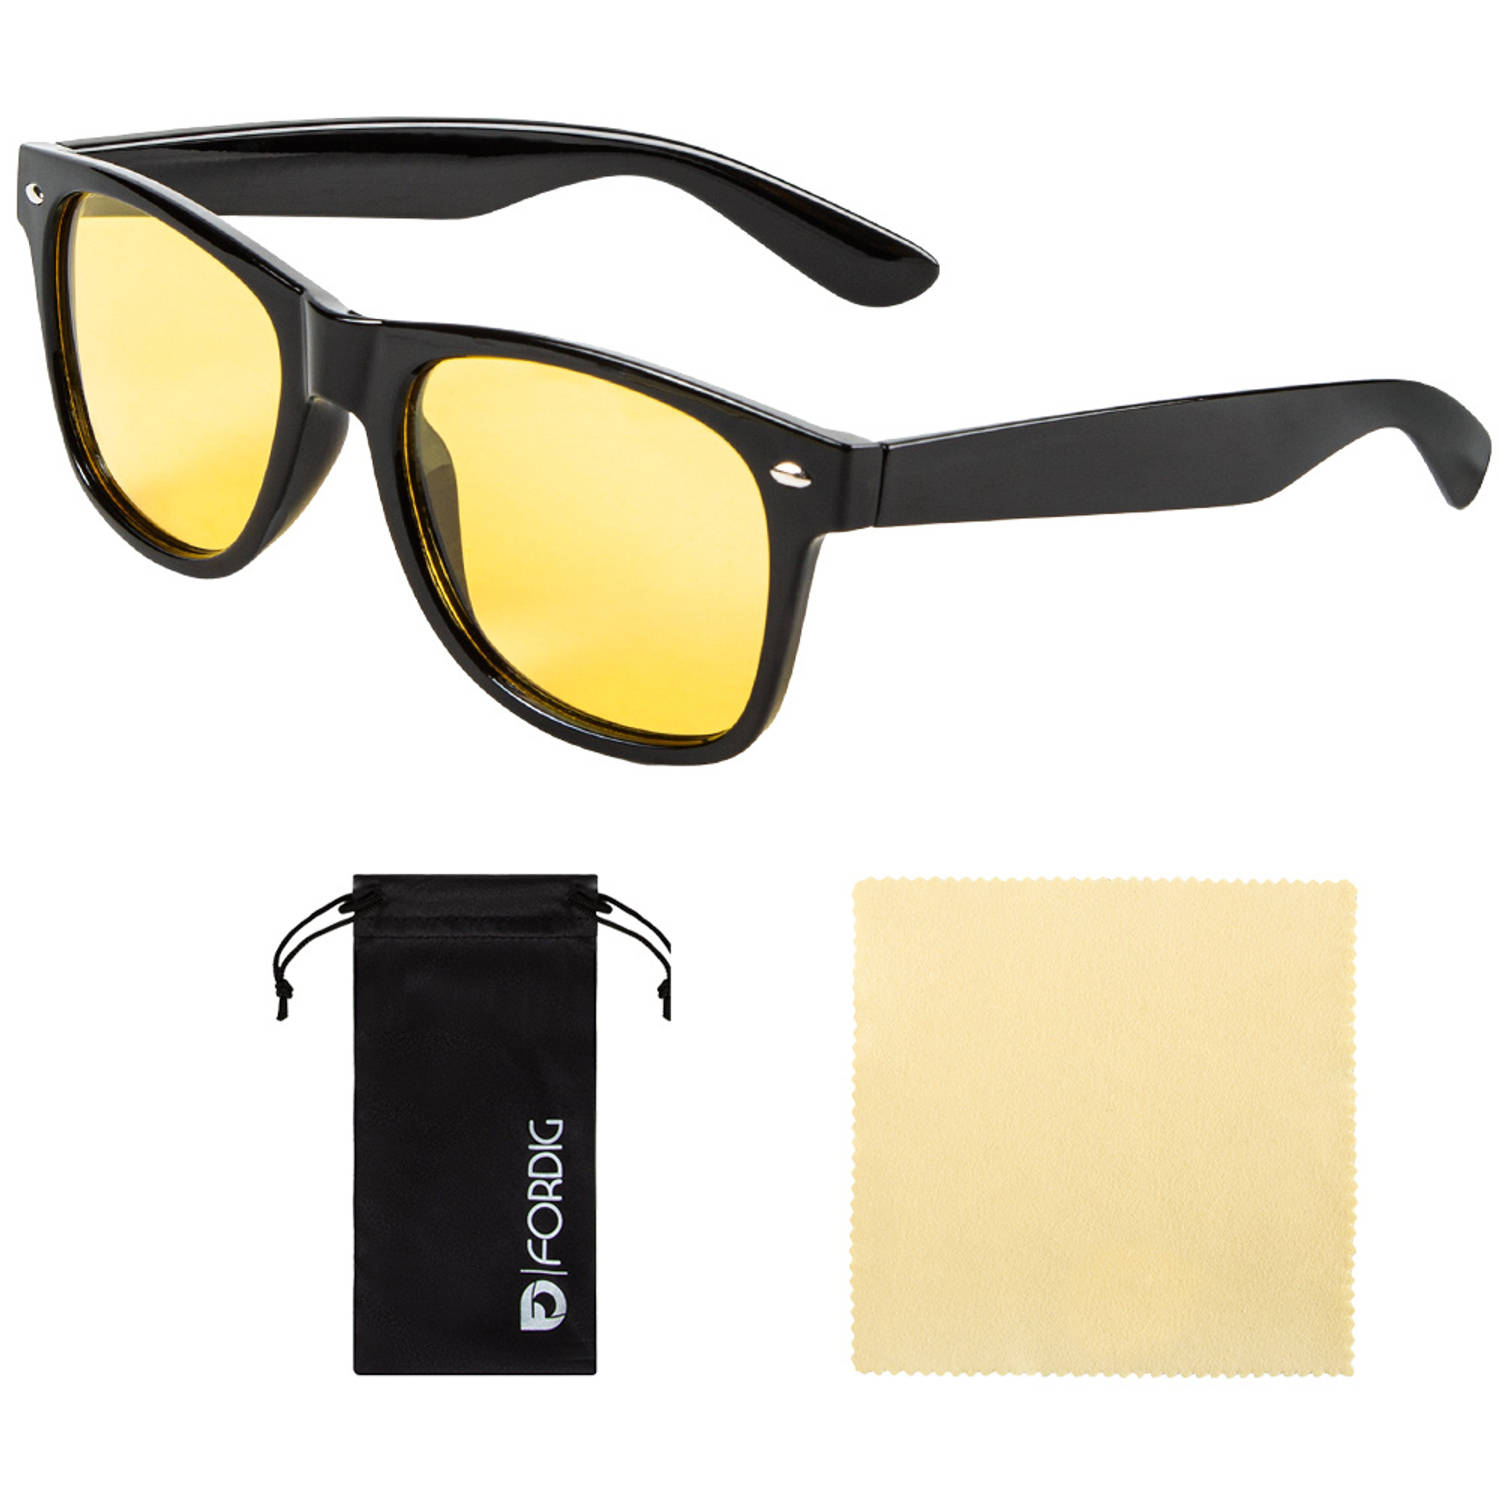 ForDig Nachtbril (Zwart)- Incl. Brillenhoes en Schoonmaakdoek - Overzetbril Auto - Opzetbril Nacht - Geel Overzet Bril